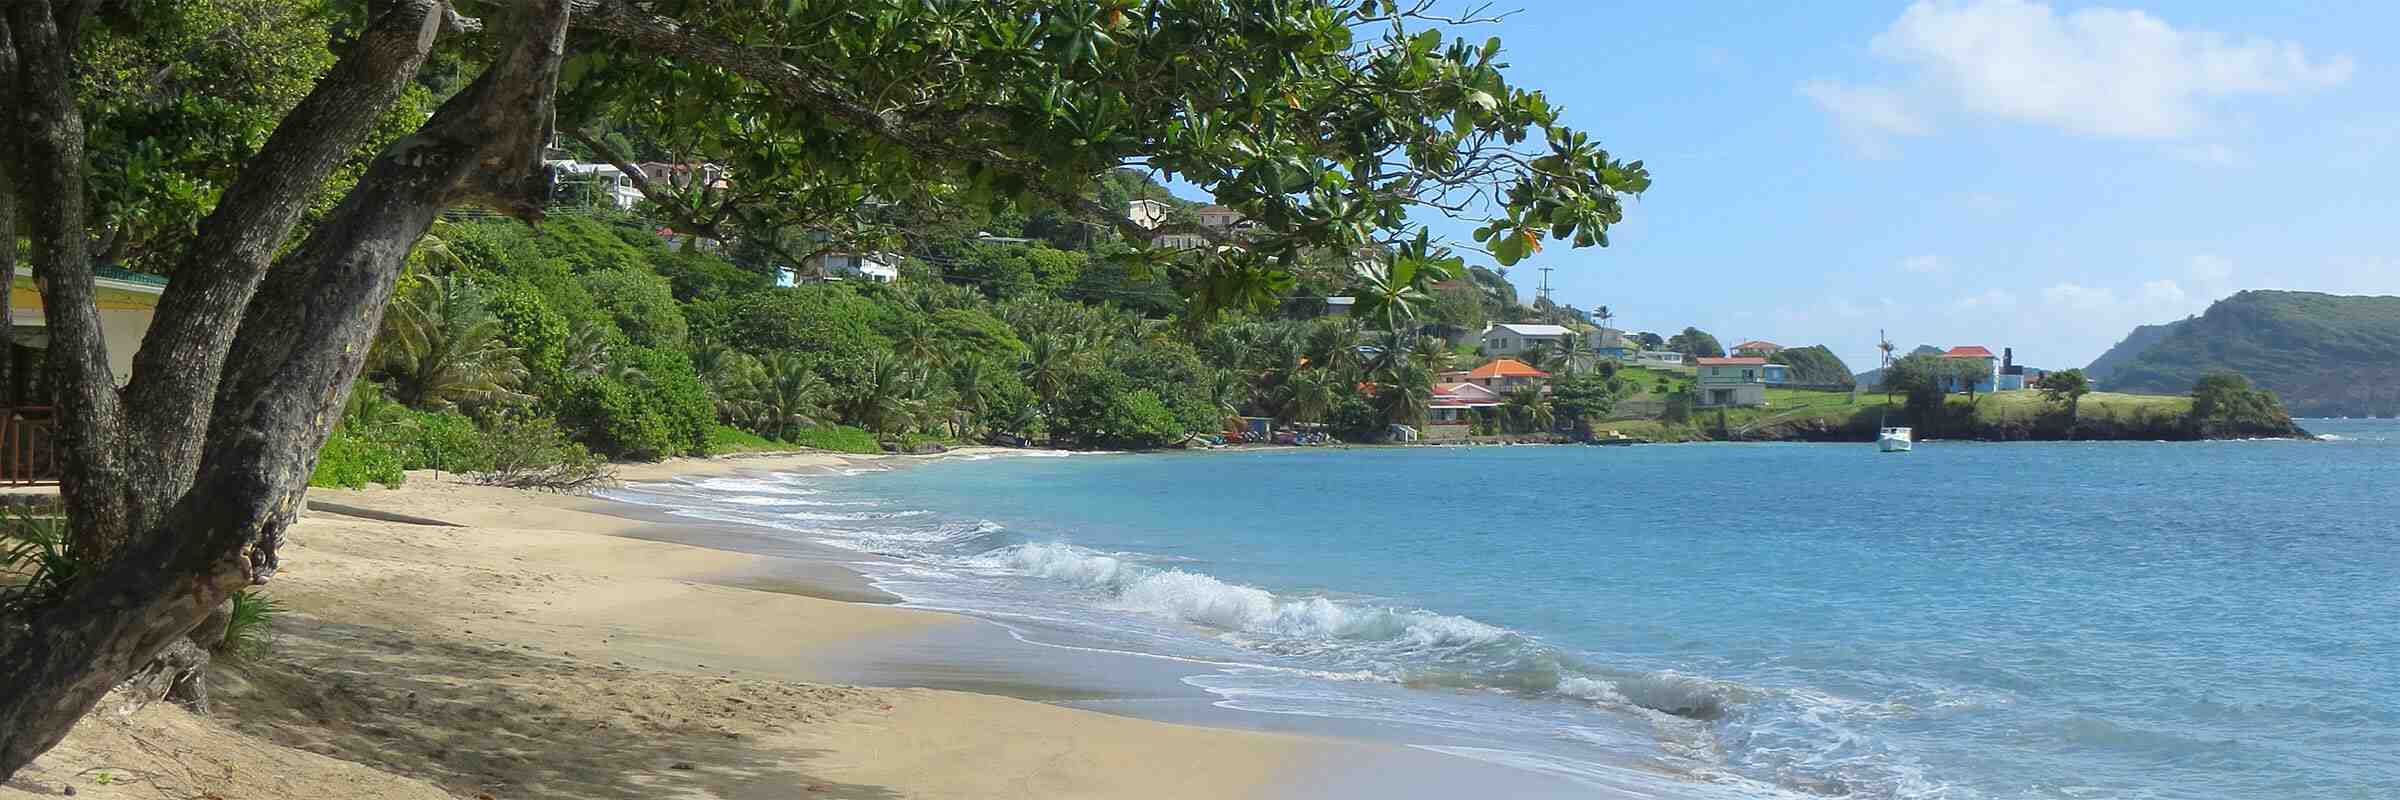 Care este cea mai frumoasă insula Guadelupa sau Martinica?